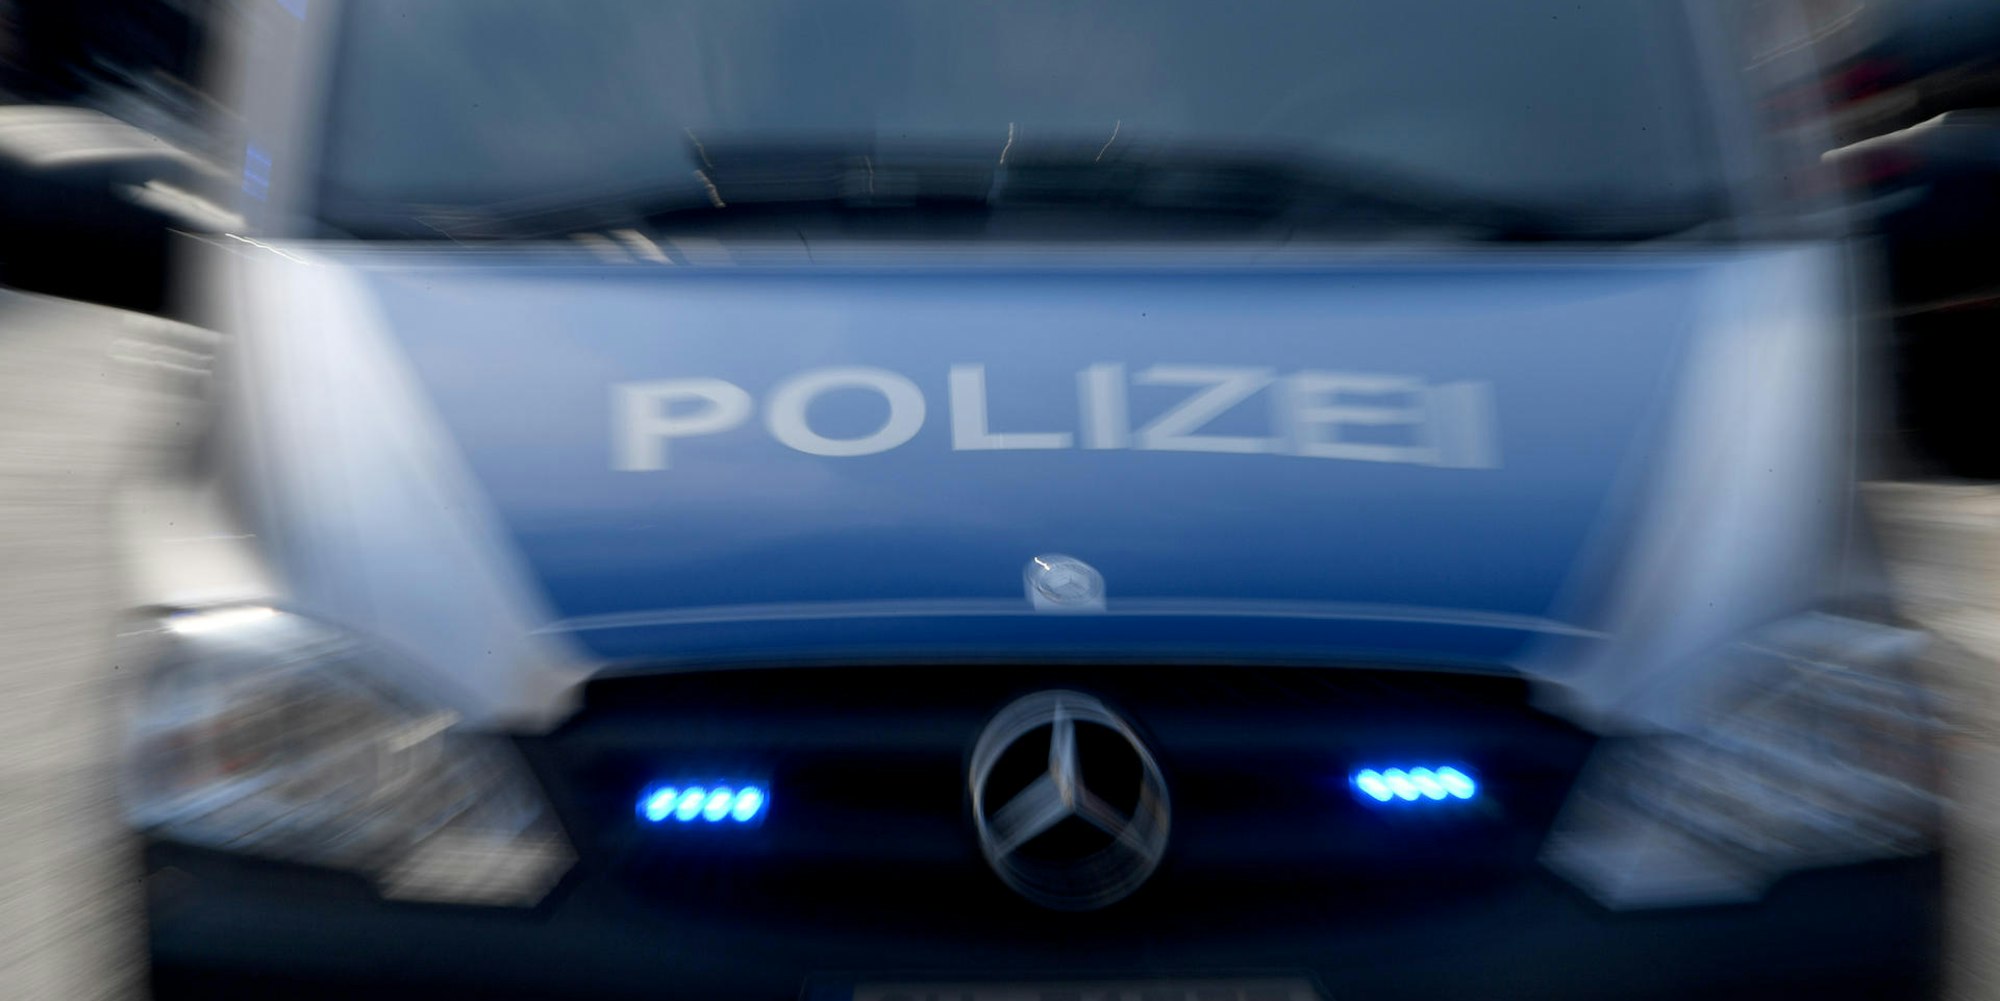 Polizeiwagen (symbolbild)